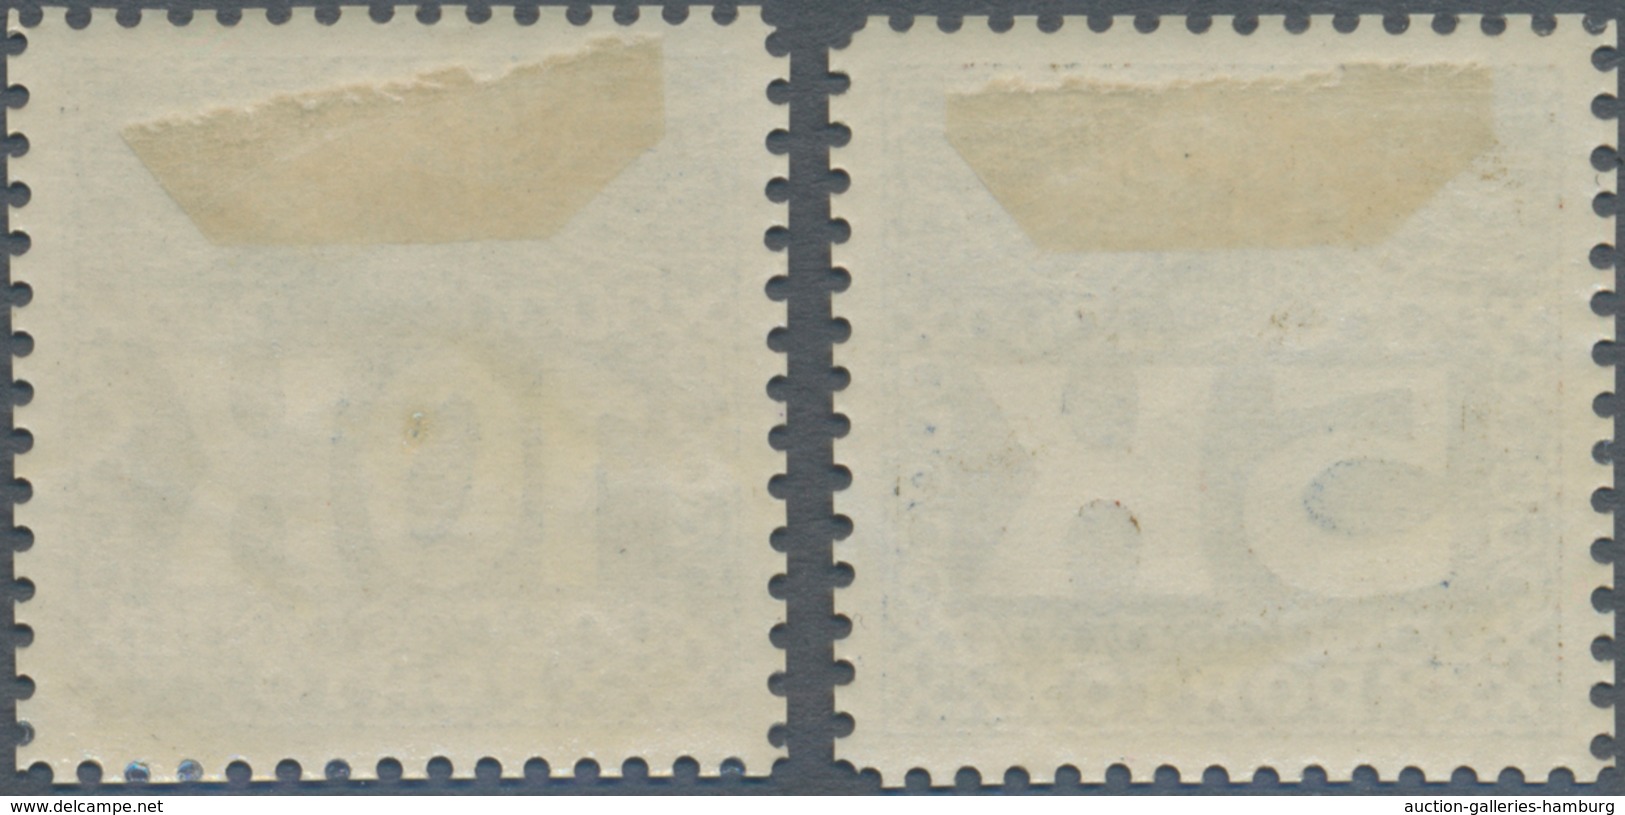 Österreich - Portomarken: 1911, 5 Und 10 Kr Dunkelblau, Gezähnte Ministervorlagen In Ungebrauchter P - Strafport